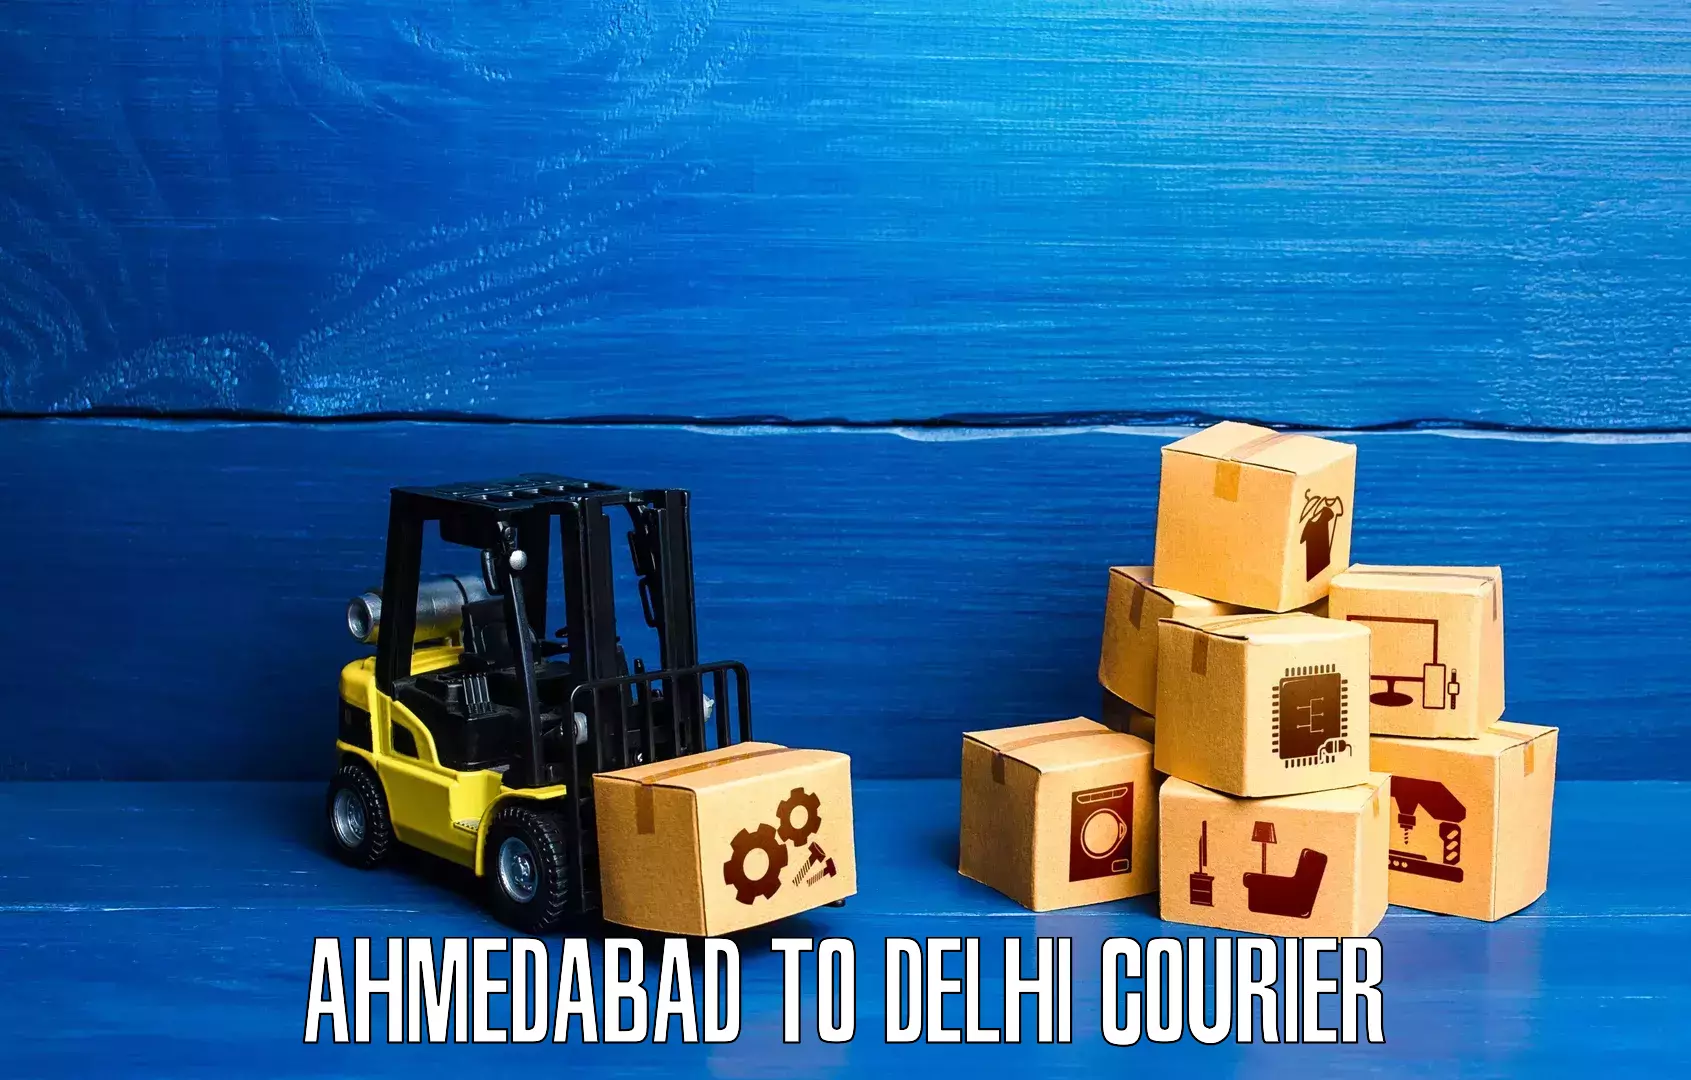 Express logistics providers Ahmedabad to Delhi